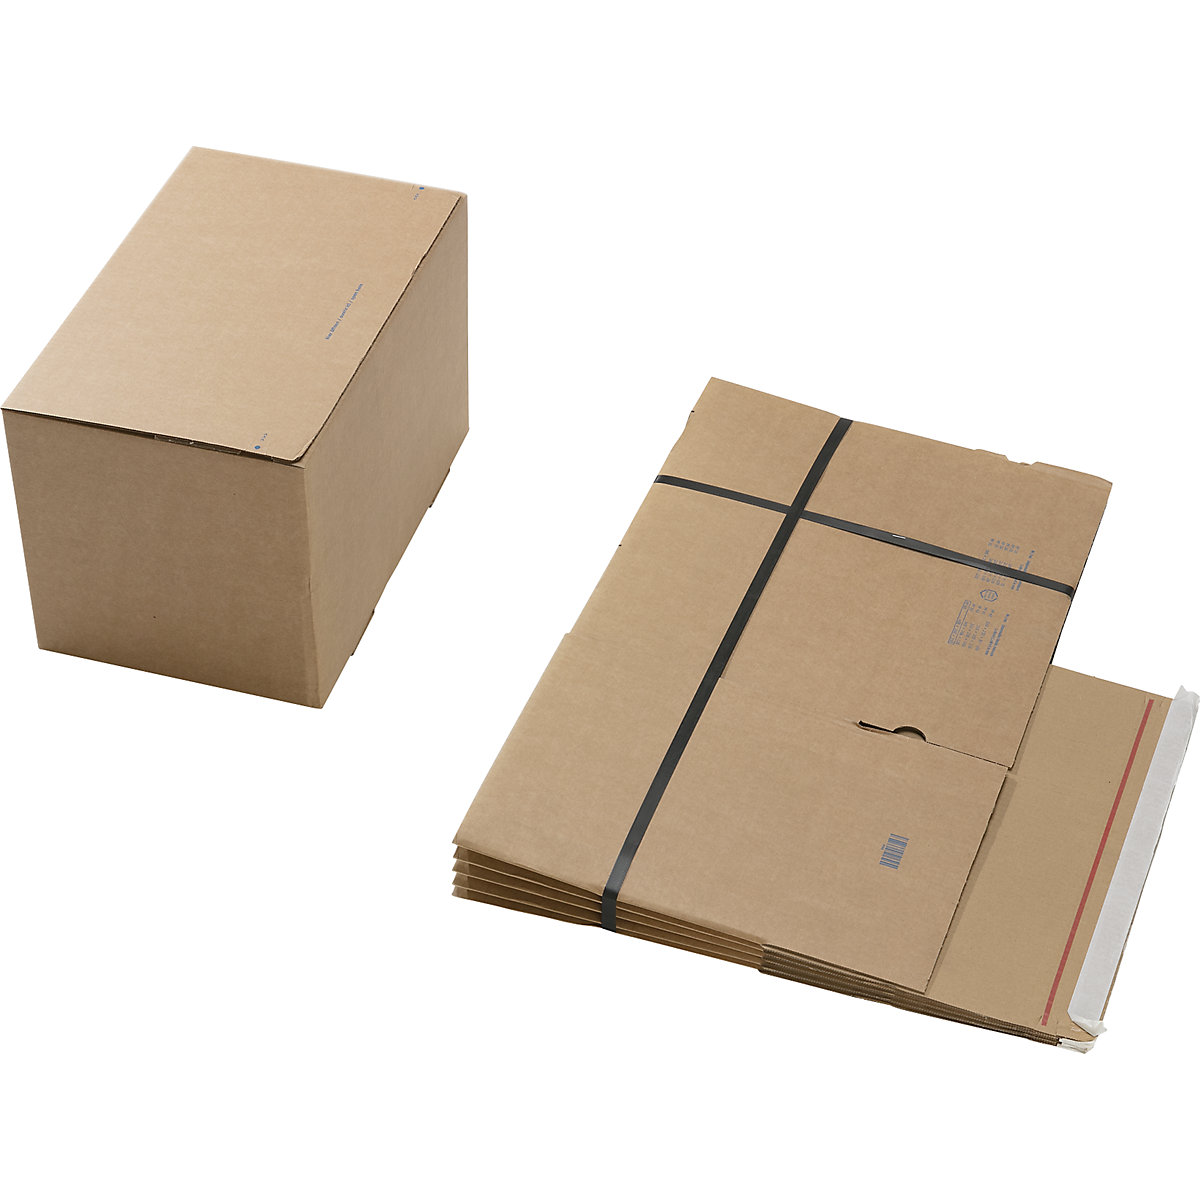 Caixa de cartão de envio, com fundo automático e fecho autocolante, dimensões interiores CxLxA 400 x 260 x 250 mm, embalagem de 60 unidades-4